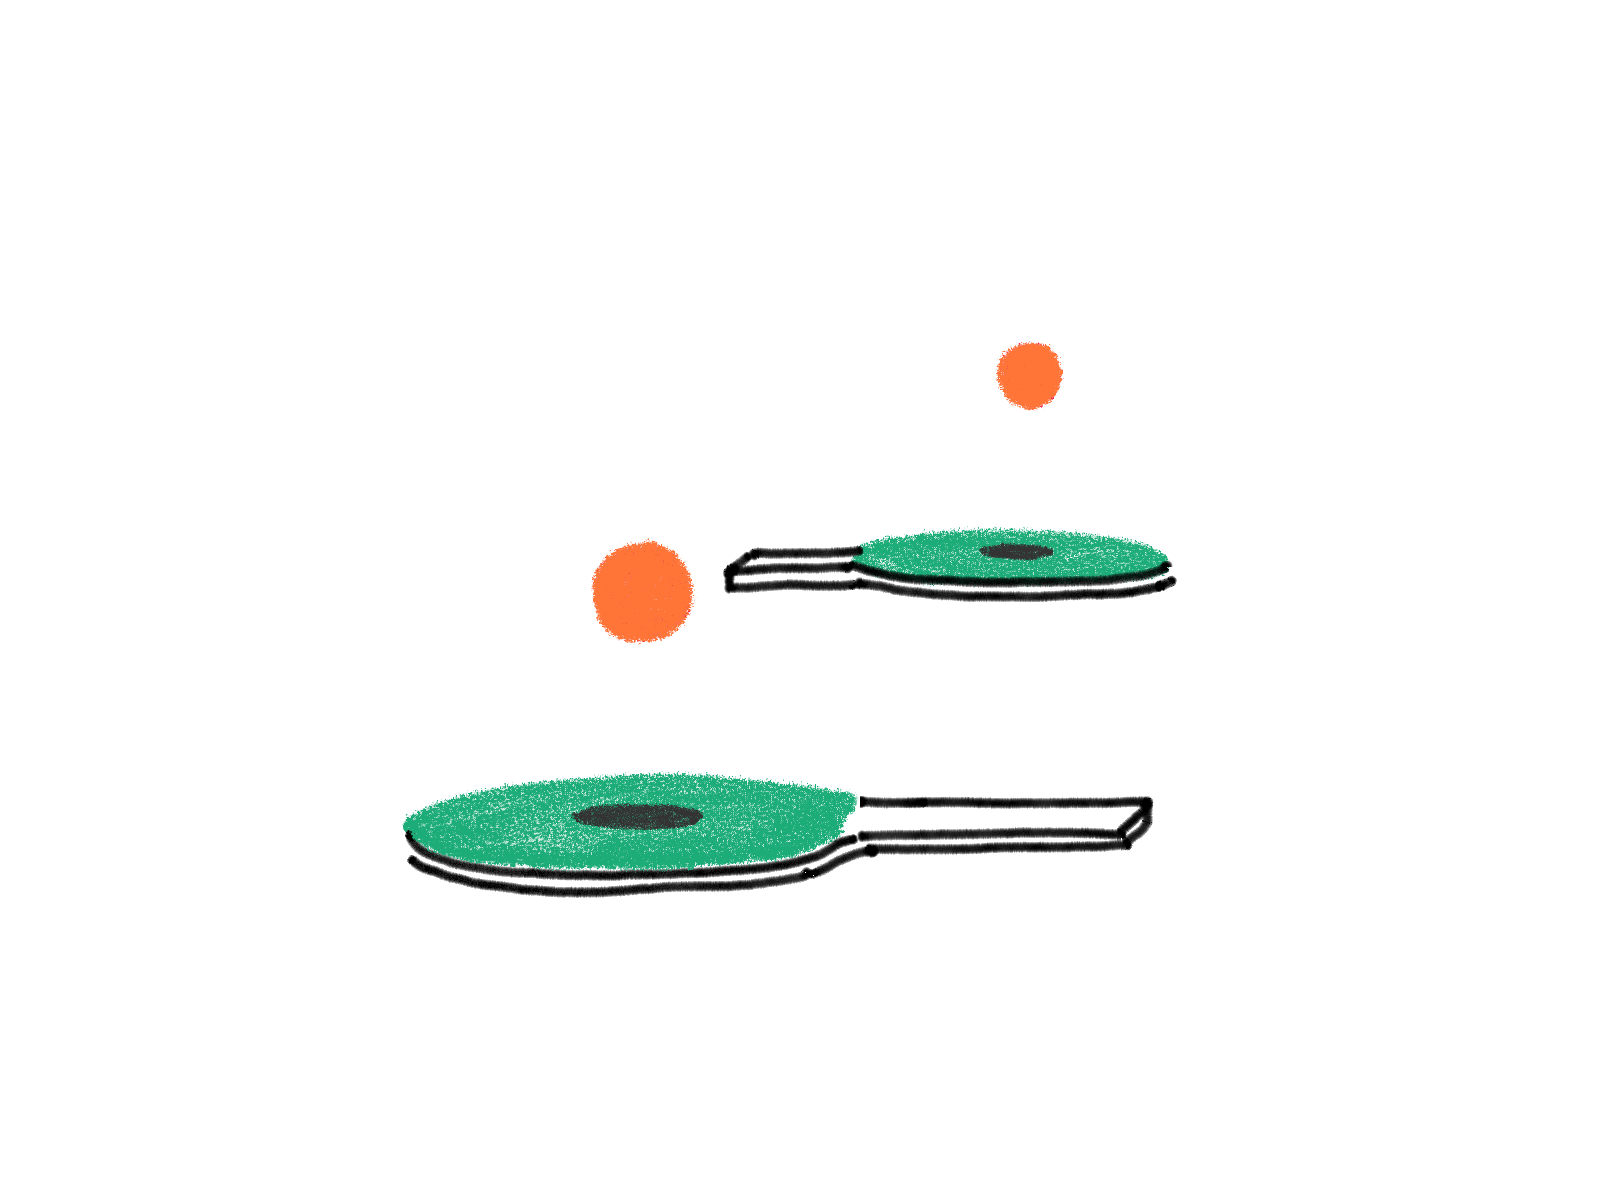 Bouncing Pong animated animated gif ball bounce gif illustration ping pong table tennis